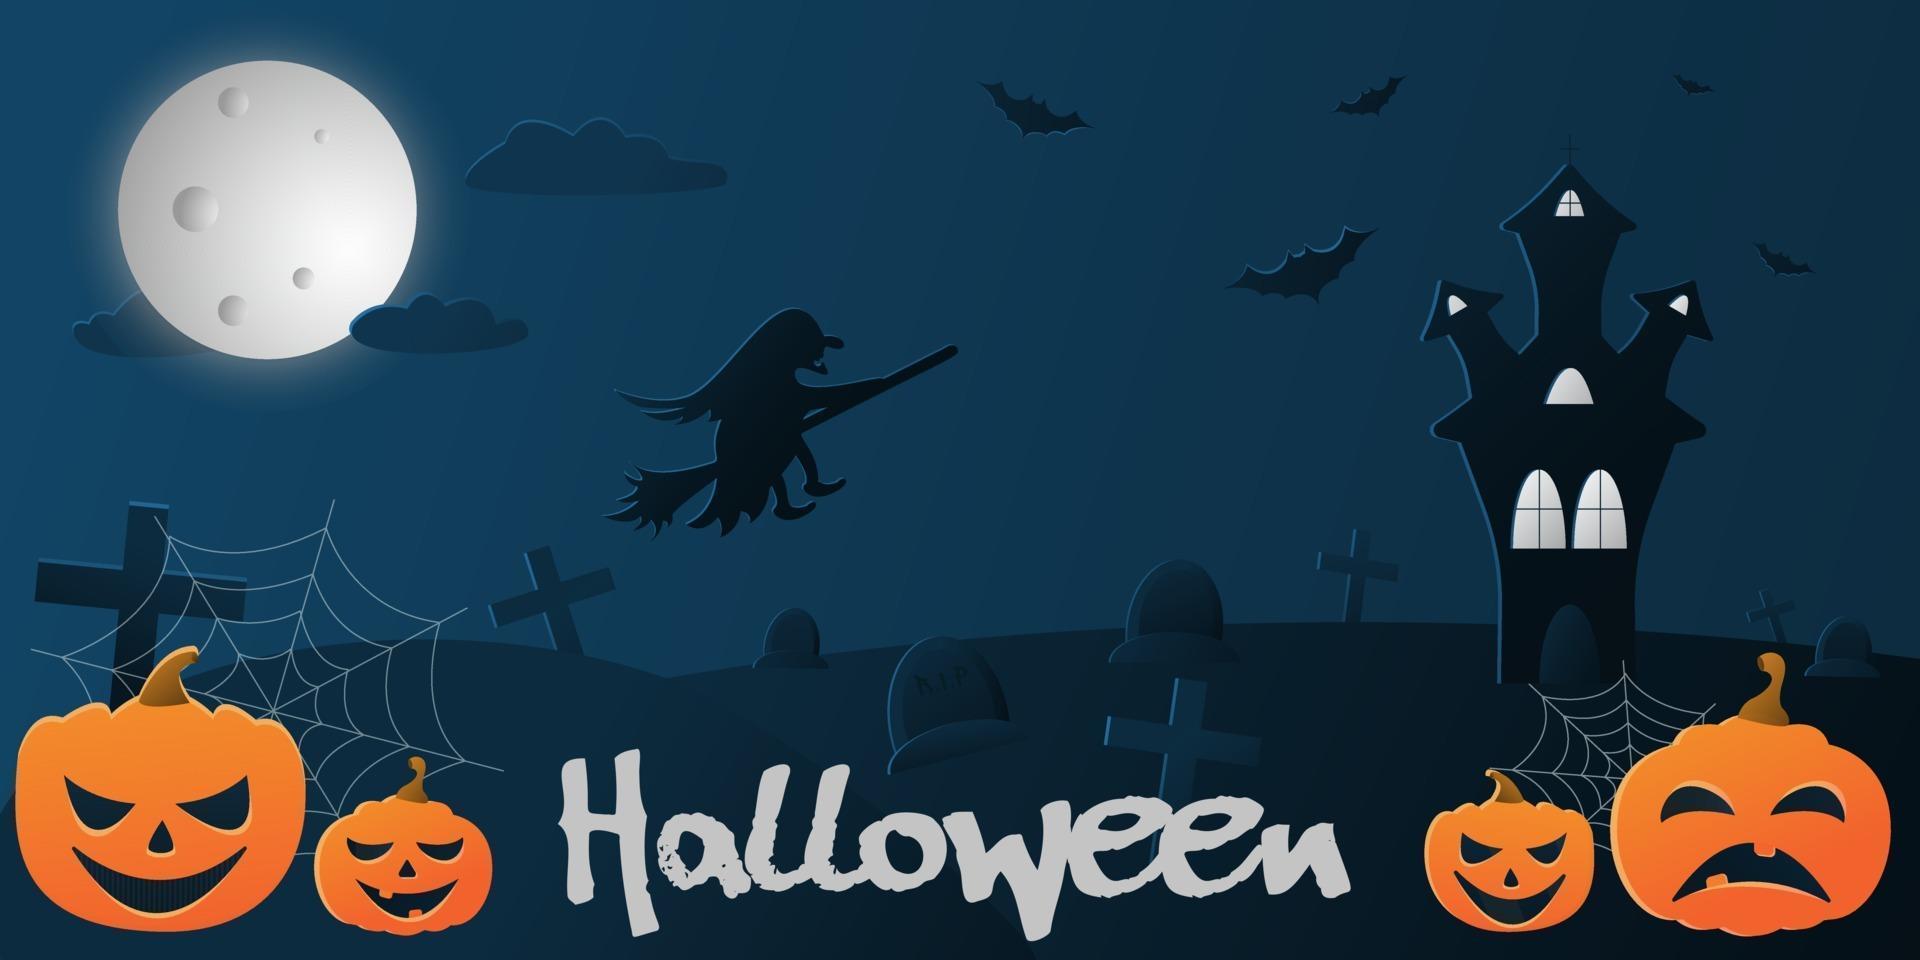 vector ilustración plana con un degradado sobre el tema de halloween, fondo azul con la imagen de una bruja voladora en el cielo, un castillo, murciélagos y calabazas